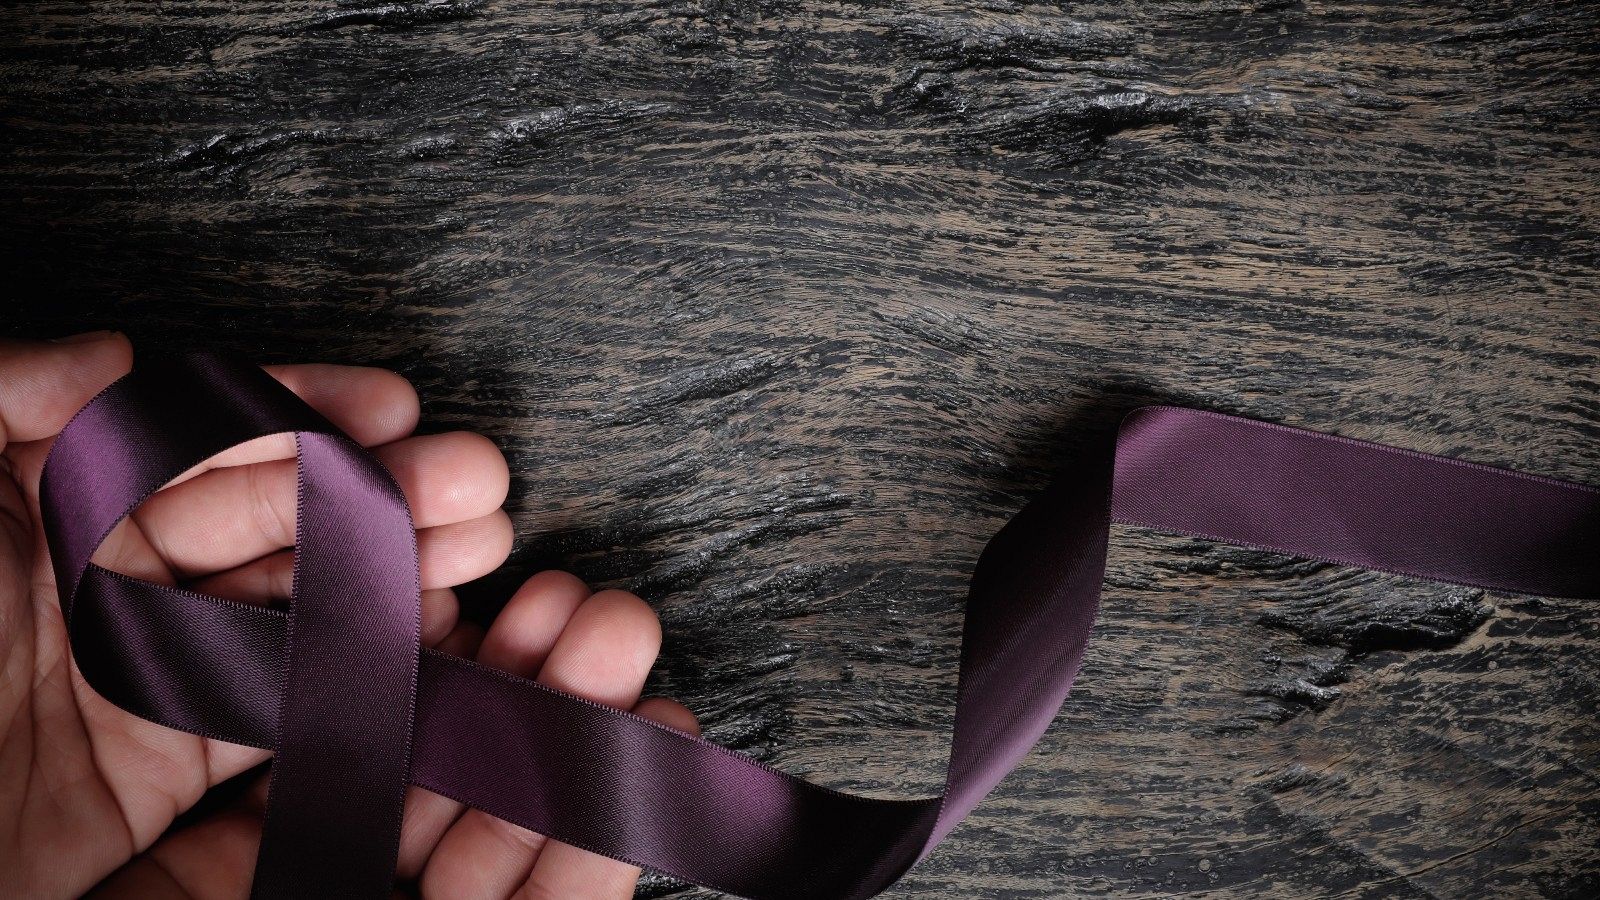 Dos manos sostienen un crespón violeta, símbolo contra la violencia de género